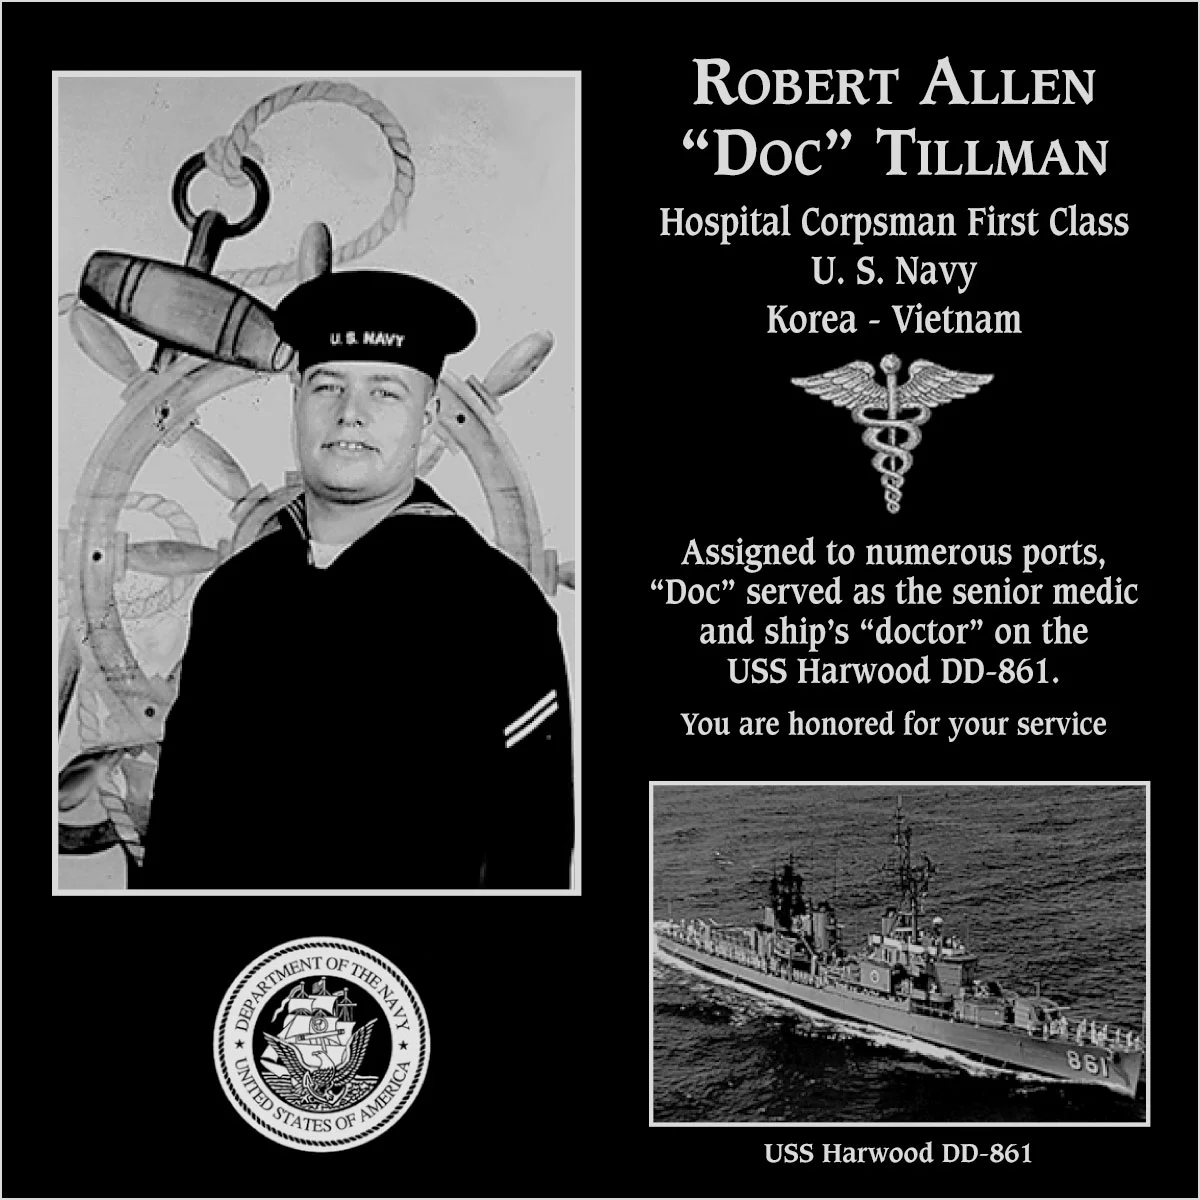 Robert Allen “Doc” Tillman